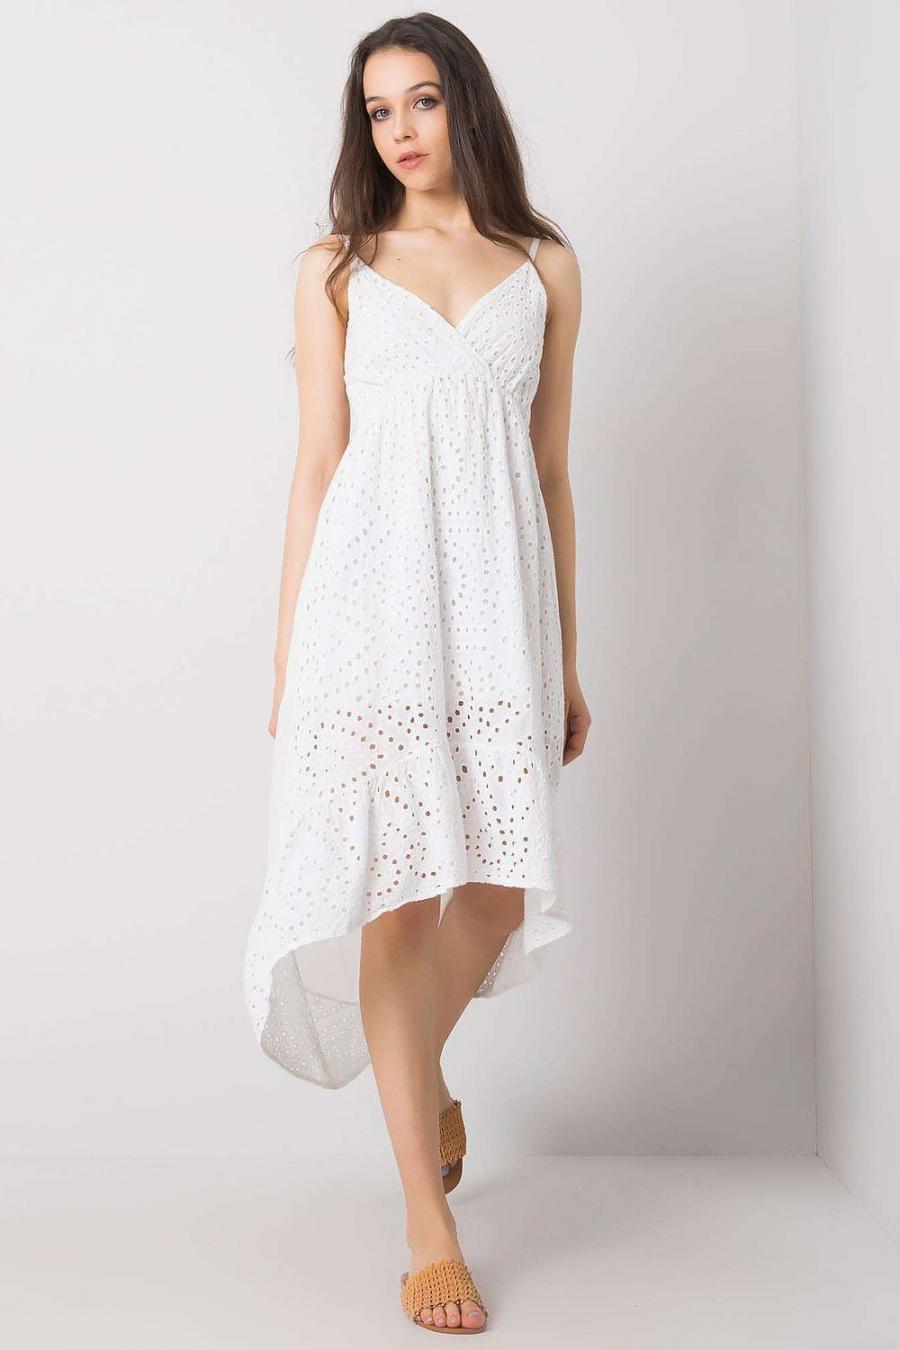 Ostatní značky šaty dámské 167537 - Bílá - velikost XL